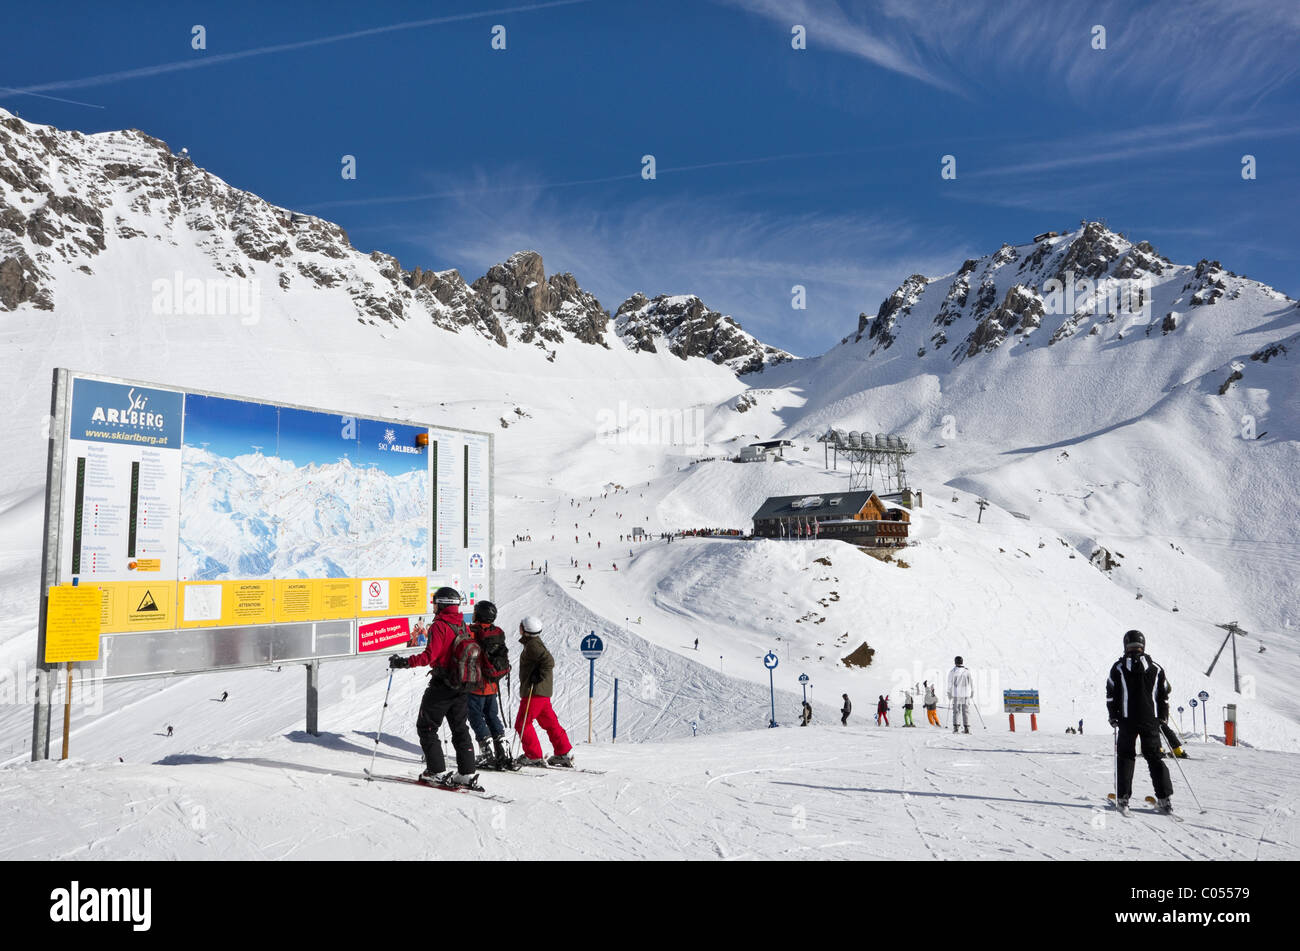 Skifahrer am Ski-Piste Karte mit Ulmer Californias Bergrestaurant und Schindler Spitze Berg. St. Anton am Arlberg-Tirol-Österreich Stockfoto